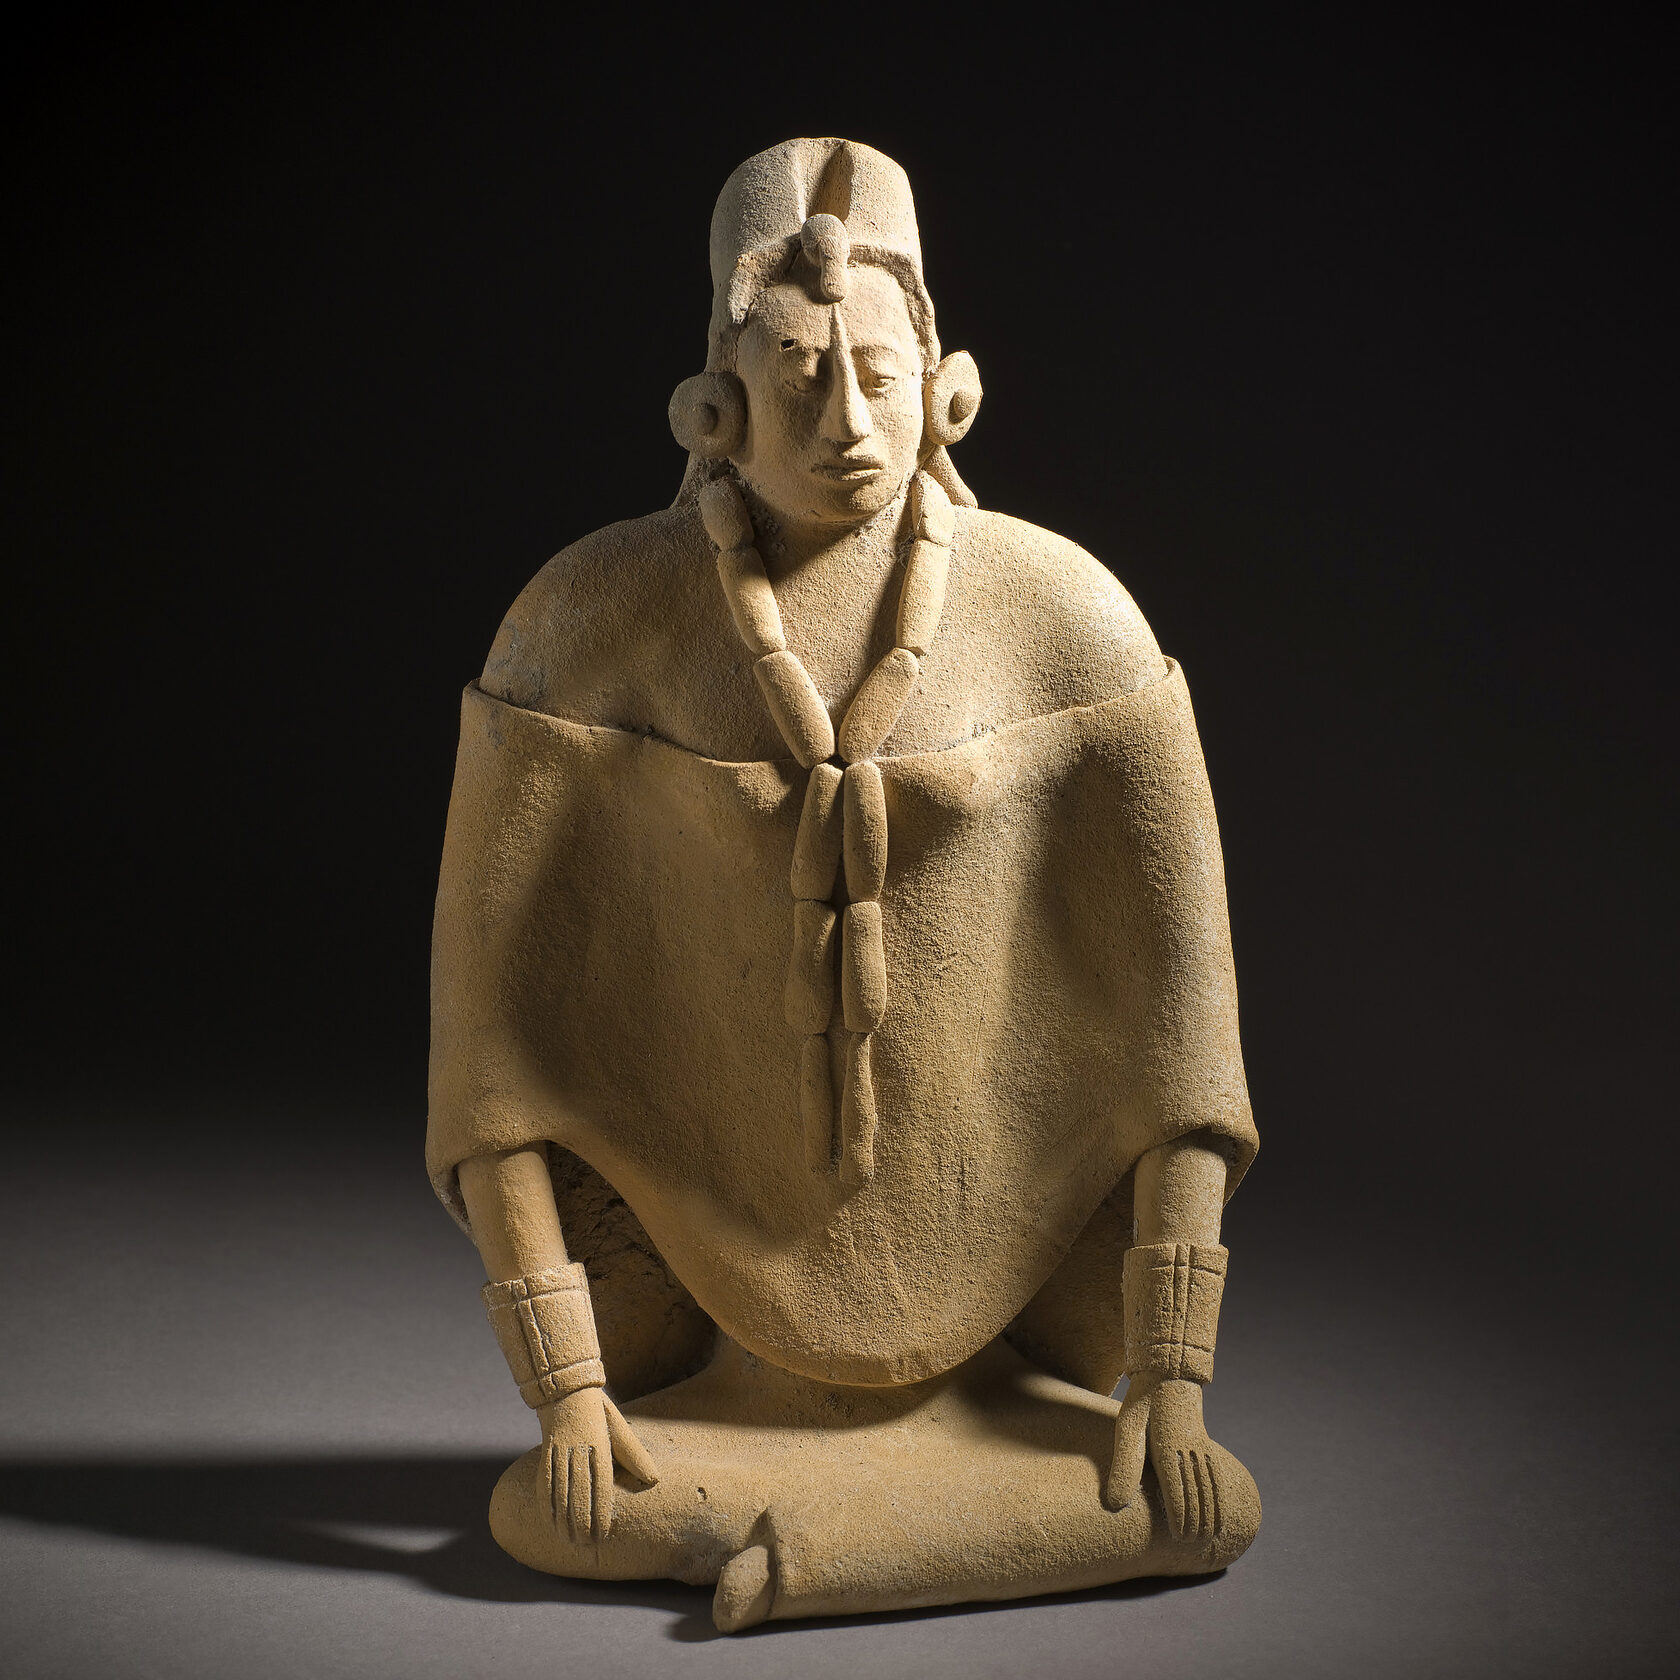 Свисток в виде женской фигуры. Майя, 600-900 гг. н.э. Коллекция Los Angeles County Museum of Art.